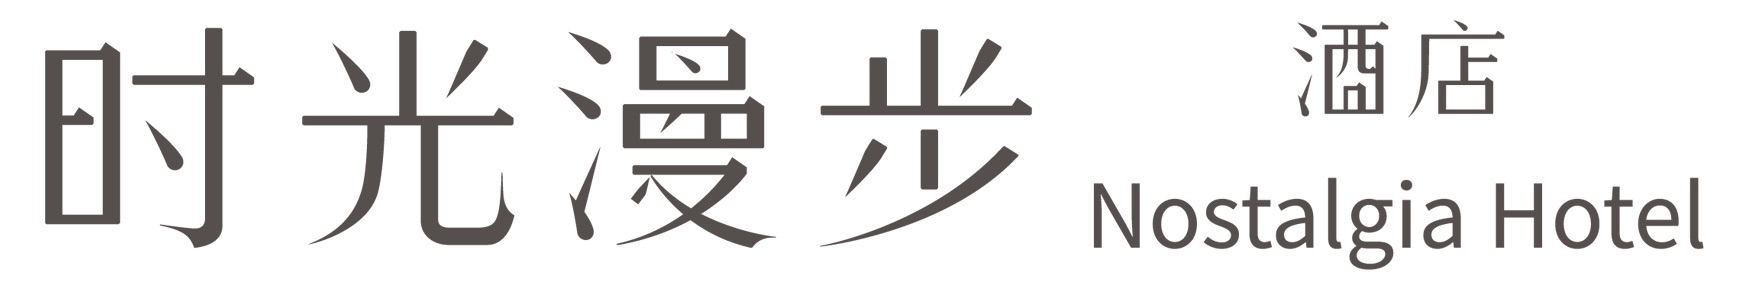 网站logo